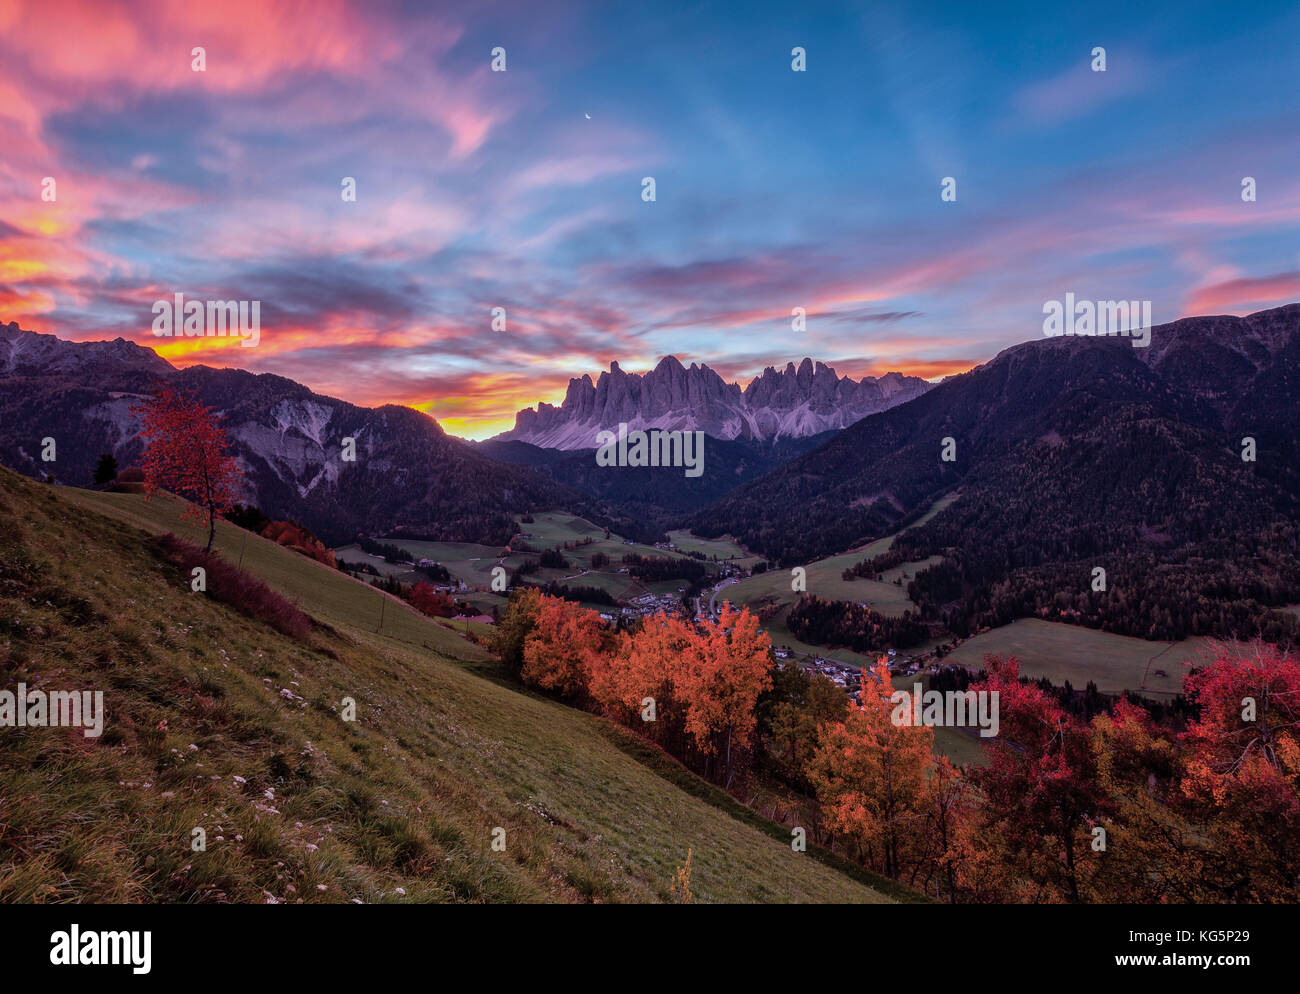 Bunte Herbstbäume umrahmen die Geislergruppe und das Dorf St. Magdalena bei Sonnenaufgang im Funes Tal Südtirol Dolomiten Italien Europa Stockfoto